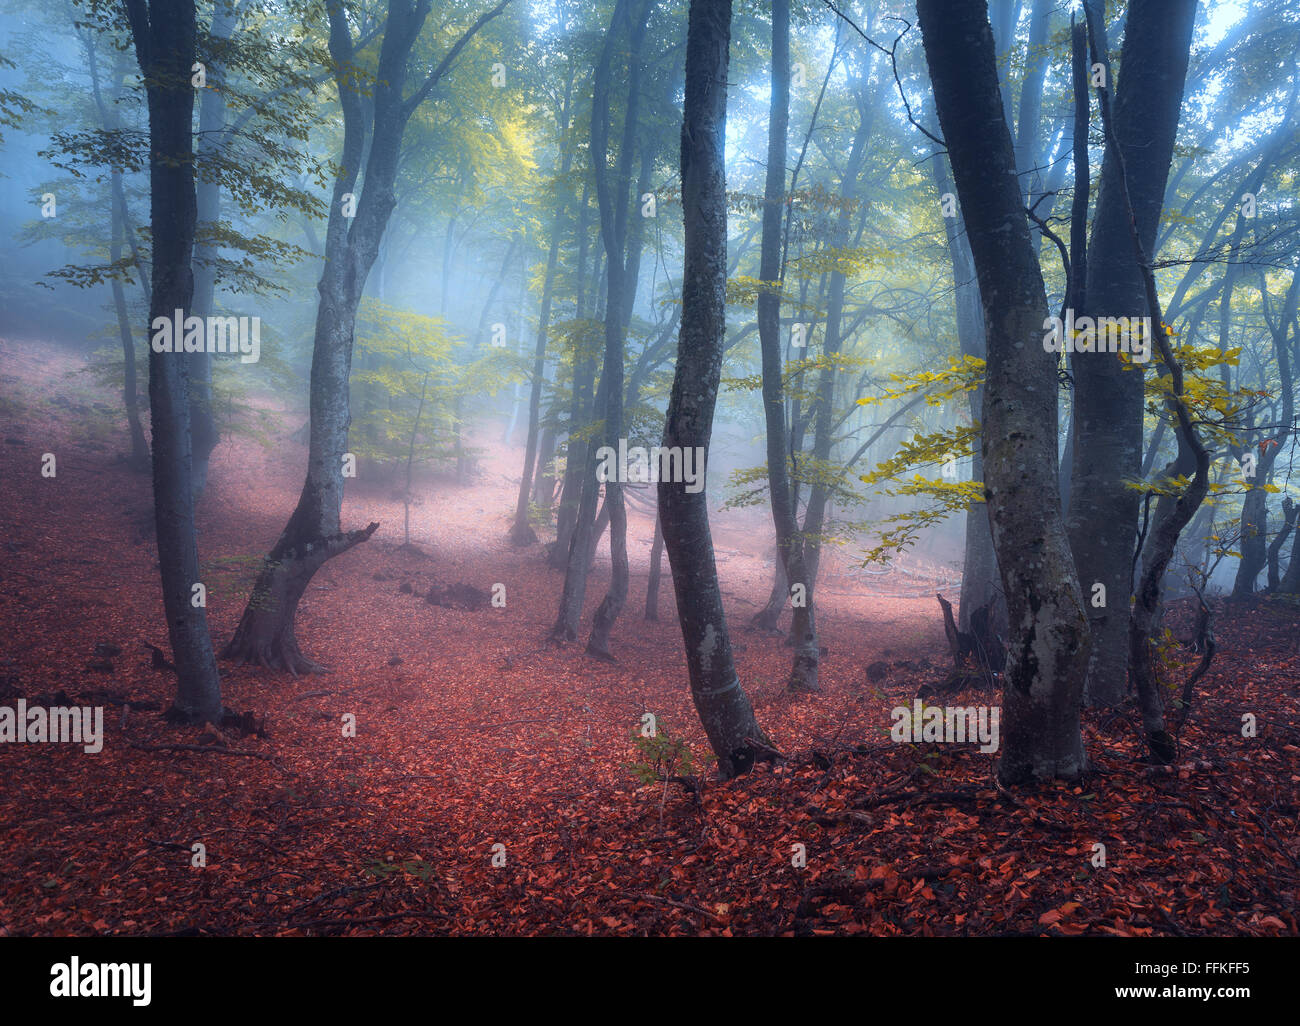 Belle forêt magique dans le brouillard en automne. Bois mystérieux. Paysage de conte de fées Banque D'Images